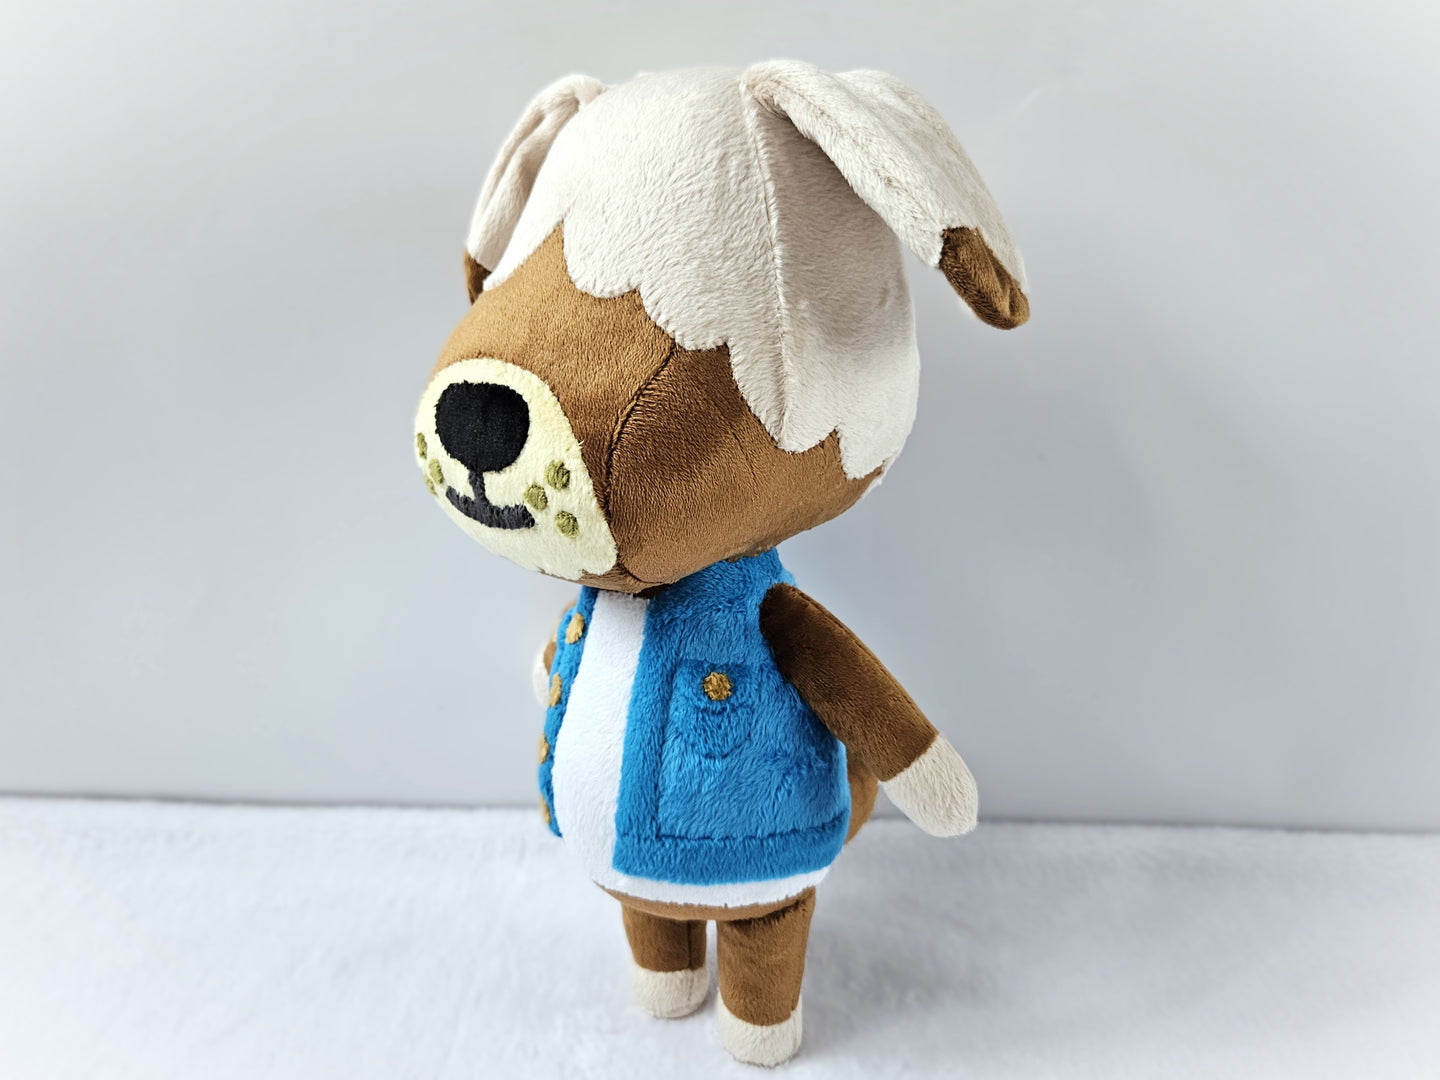 Handmade custom Shep the dog plush